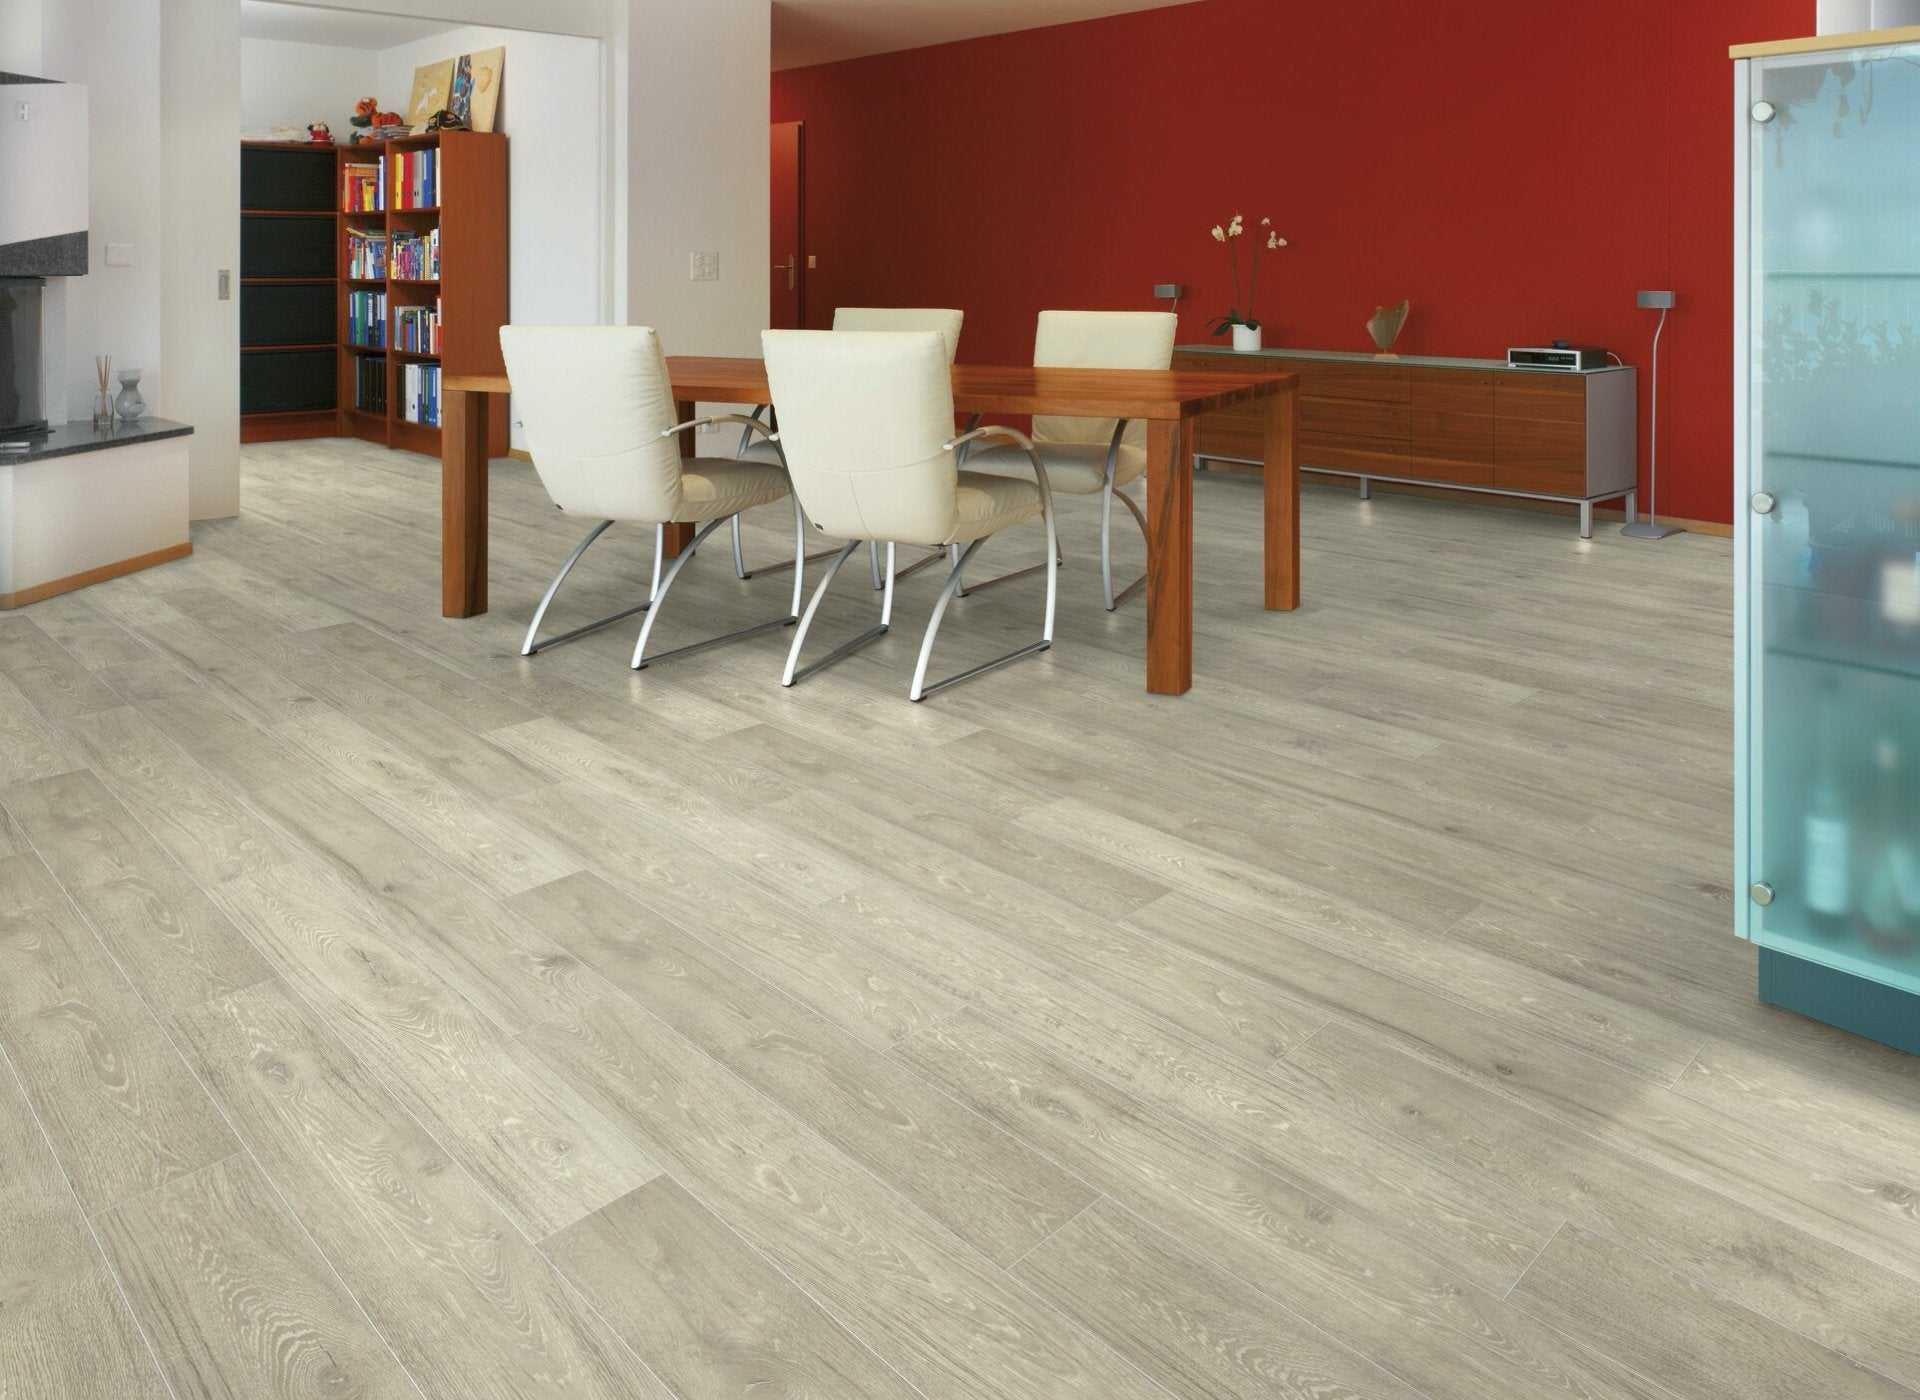 Kovisan là đơn vị cung cấp sàn gỗ với báo giá sàn gỗ KingFloor tốt nhất